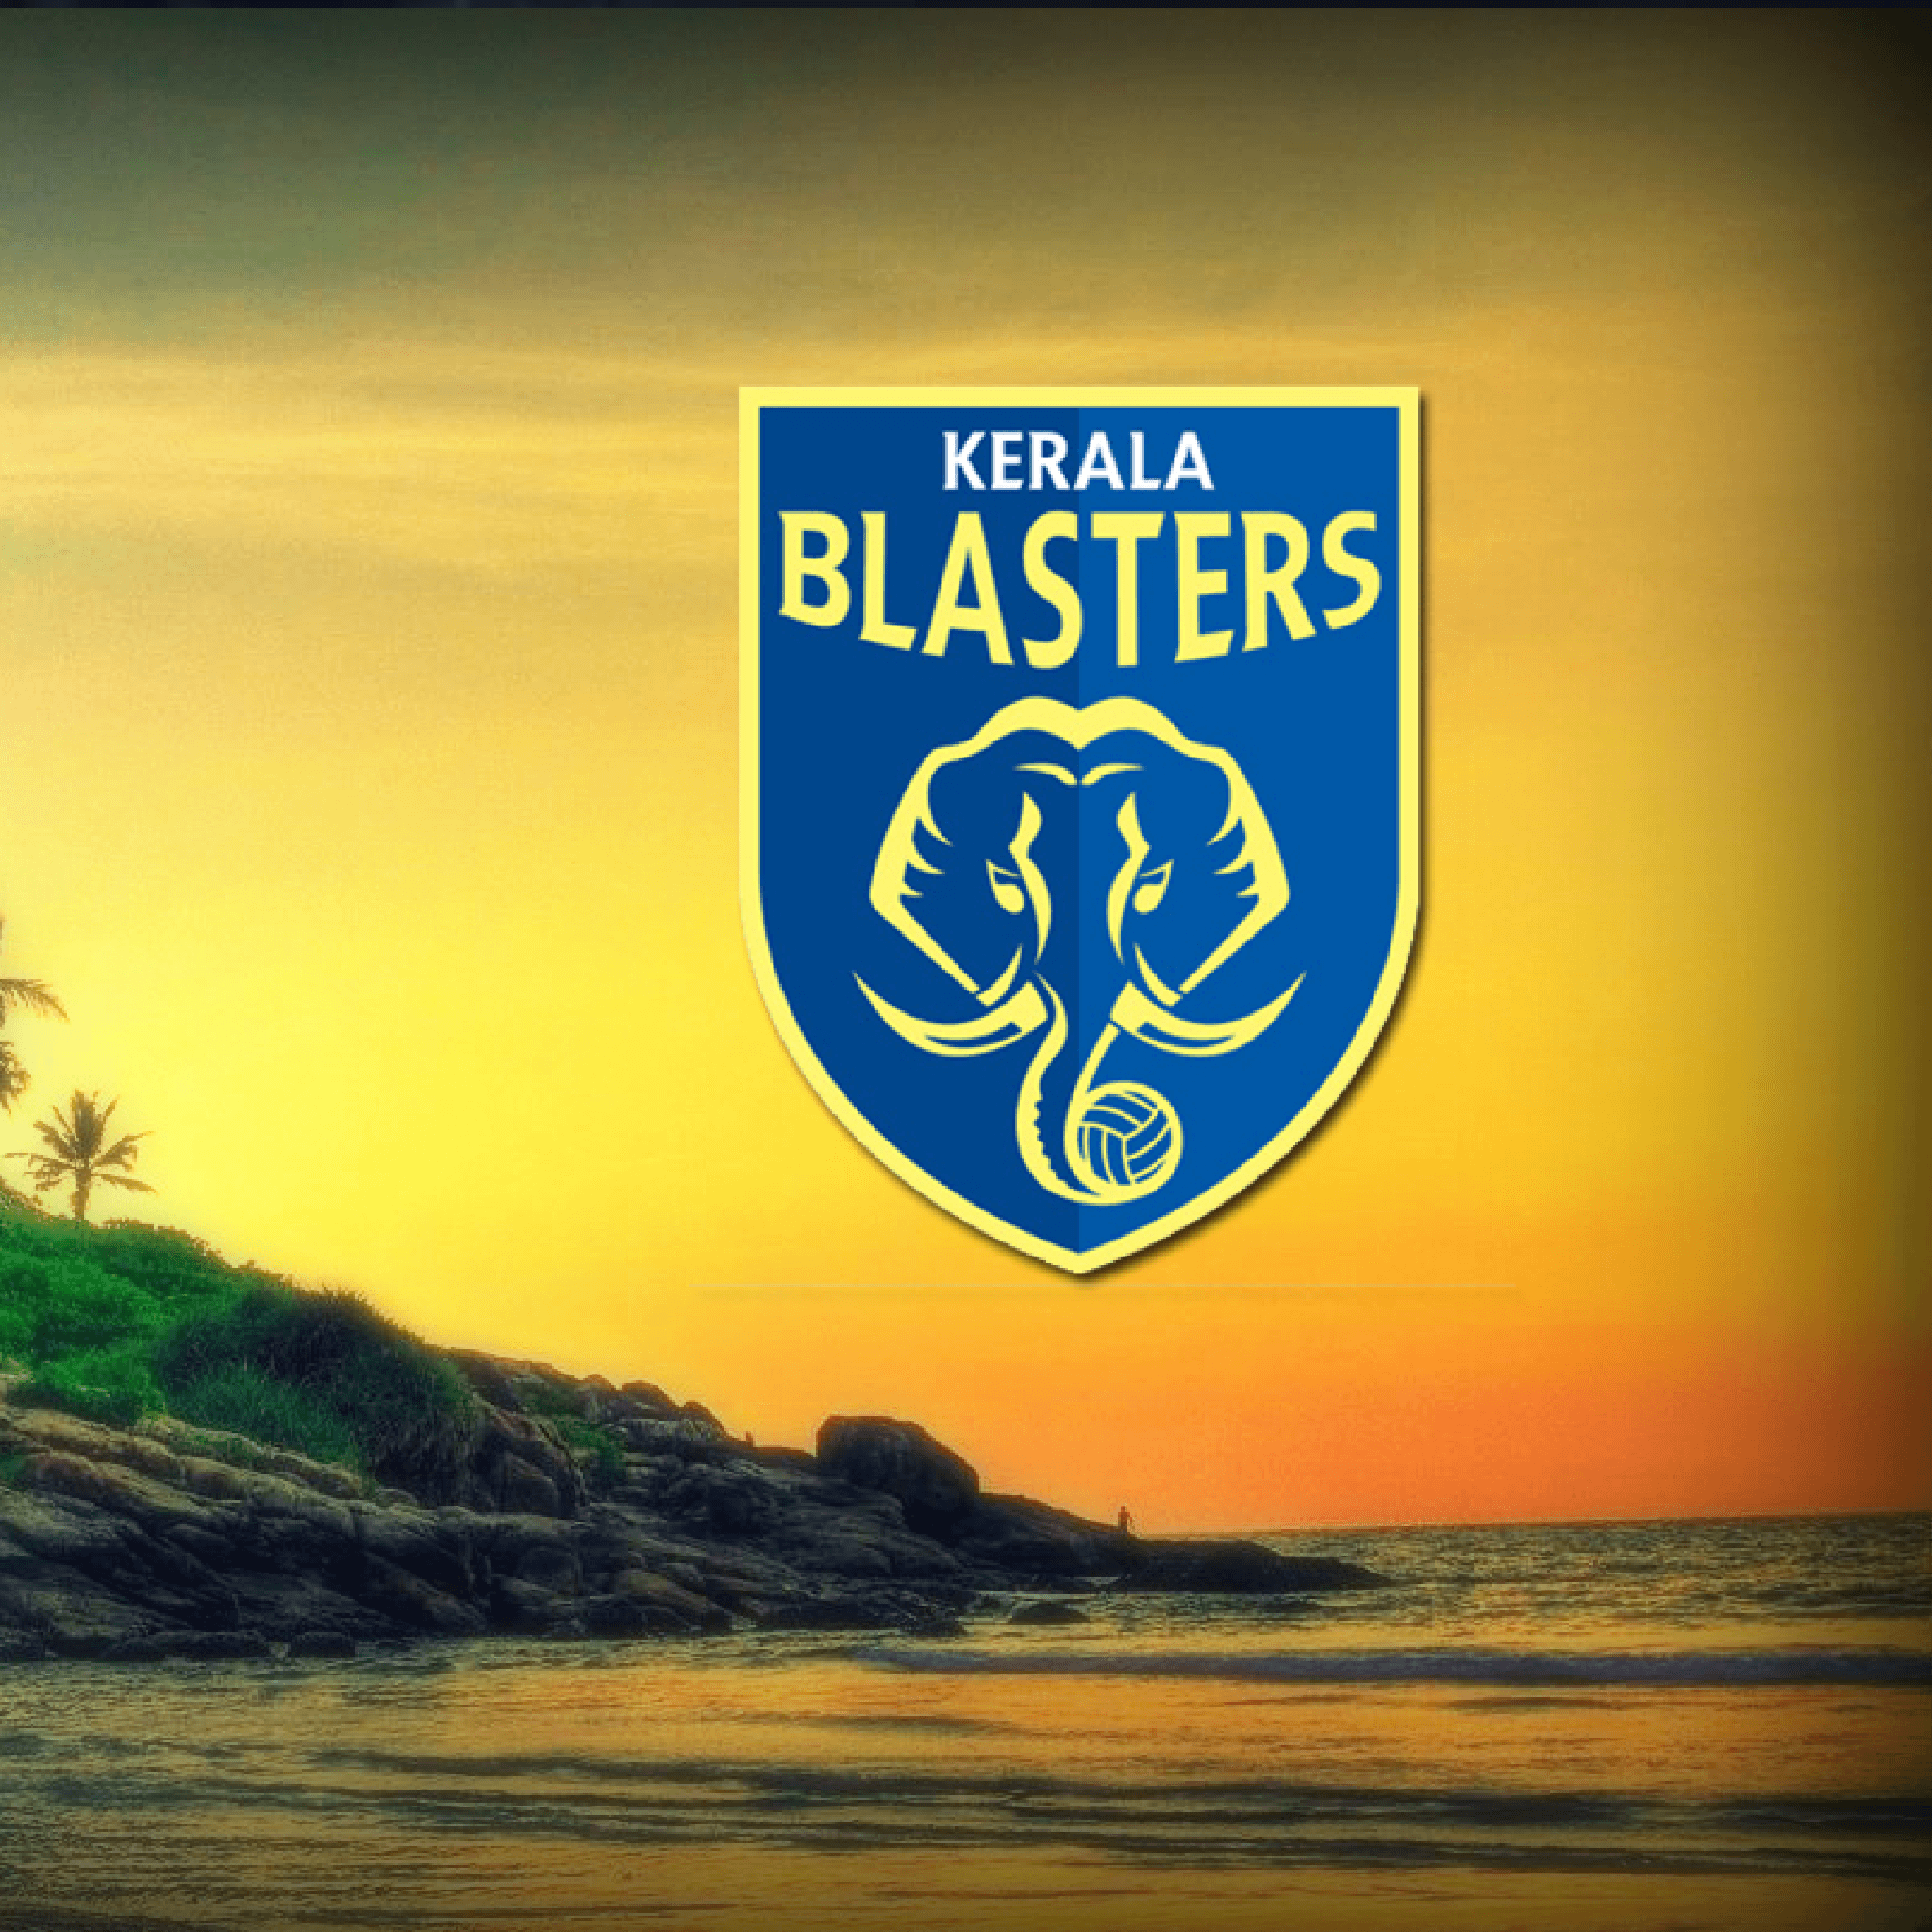 Download Kerala Blasters HD 2048 x 2048 Wallpaper